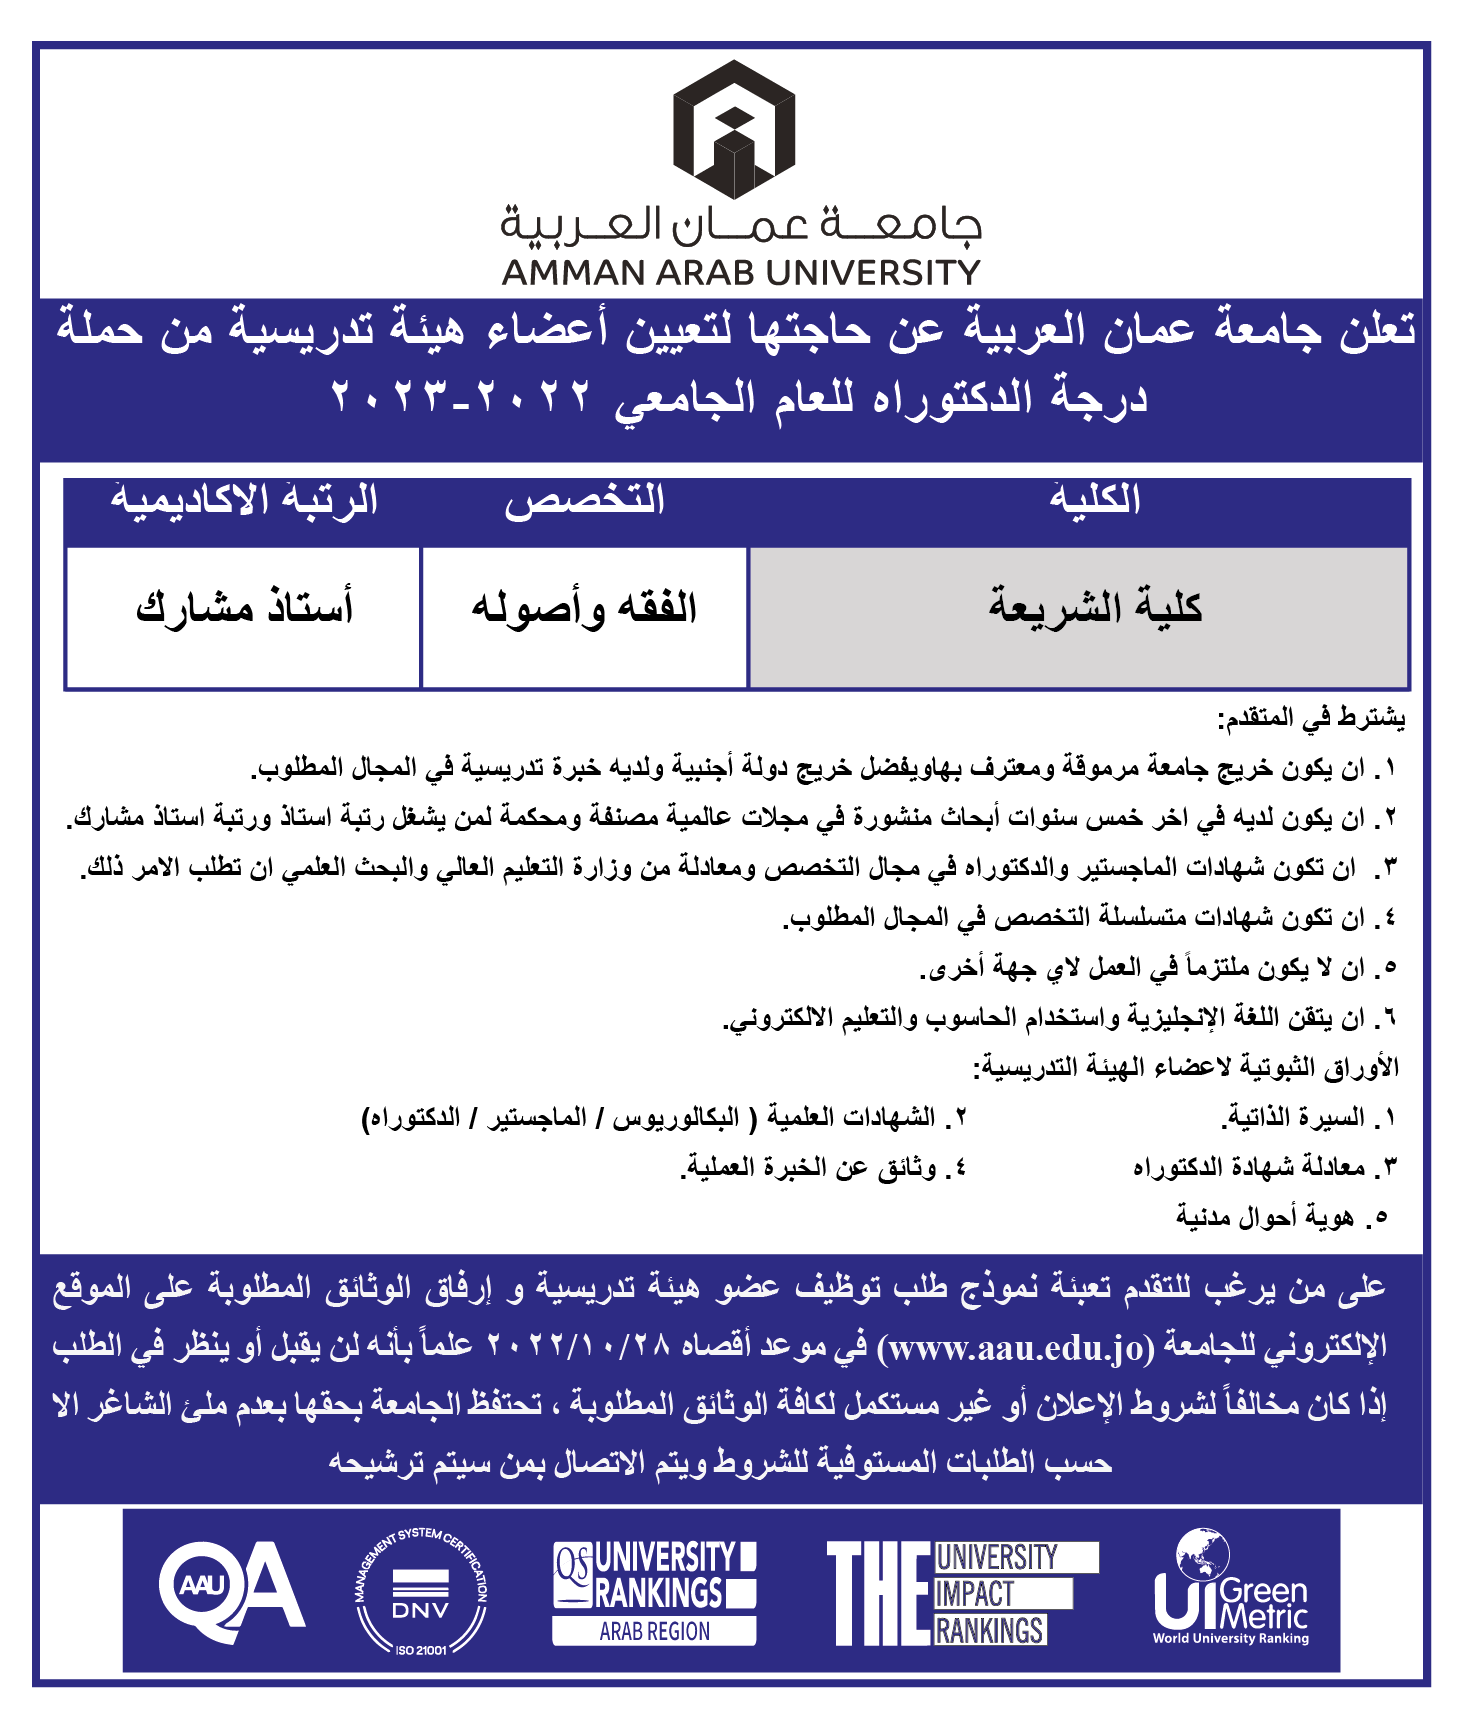 اعلان توظيف - تعلن جامعة عمان العربية عن حاجتها لتعيين اعضاء هيئة تدريس من حملة درجة الدكتوراة لكلية الشريعة